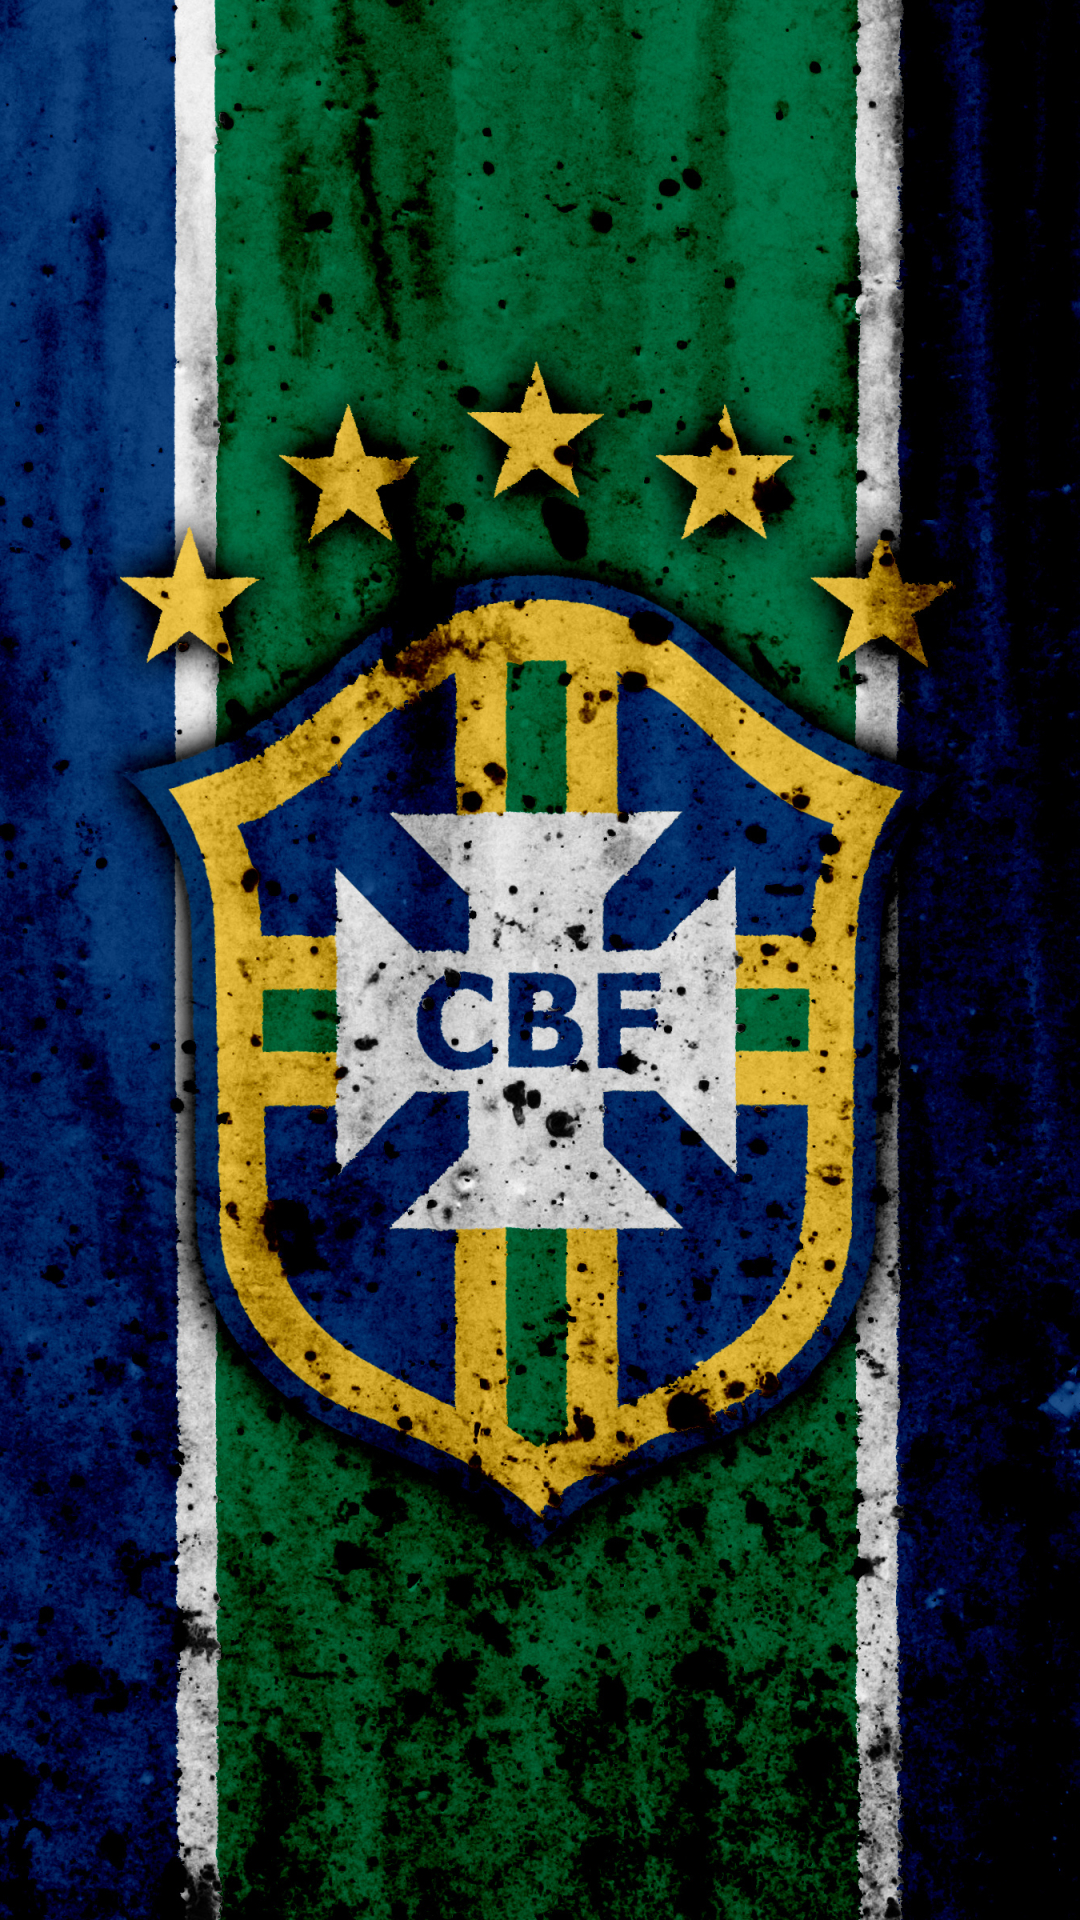 Handy-Wallpaper Sport, Fußball, Logo, Brasilien, Emblem, Brasilianische Fußballnationalmannschaft kostenlos herunterladen.